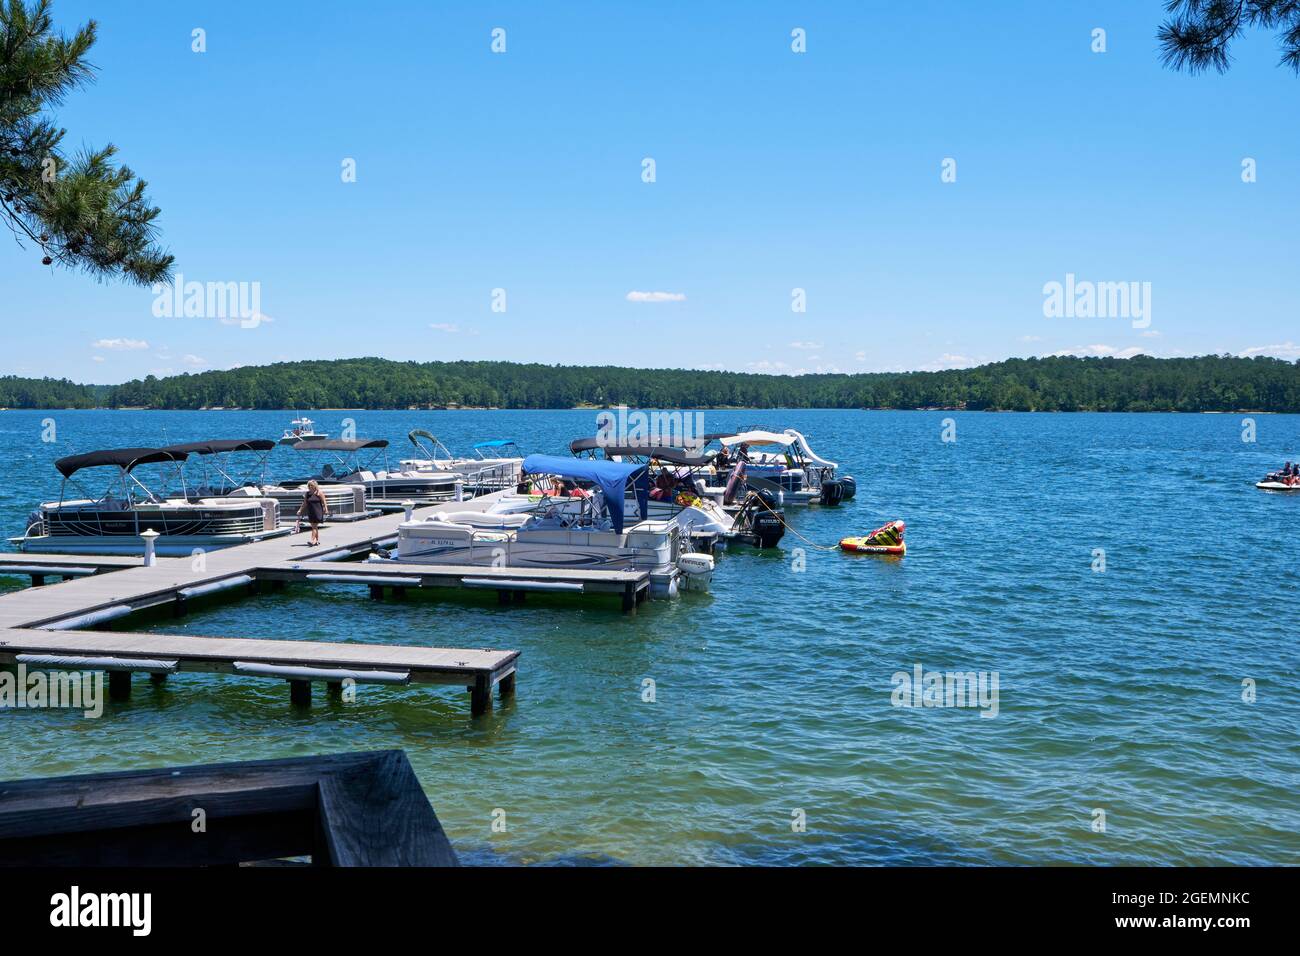 Attracchi e barche con barche legate al ristorante Kowaliga sul lago Martin, Alabama USA. Foto Stock